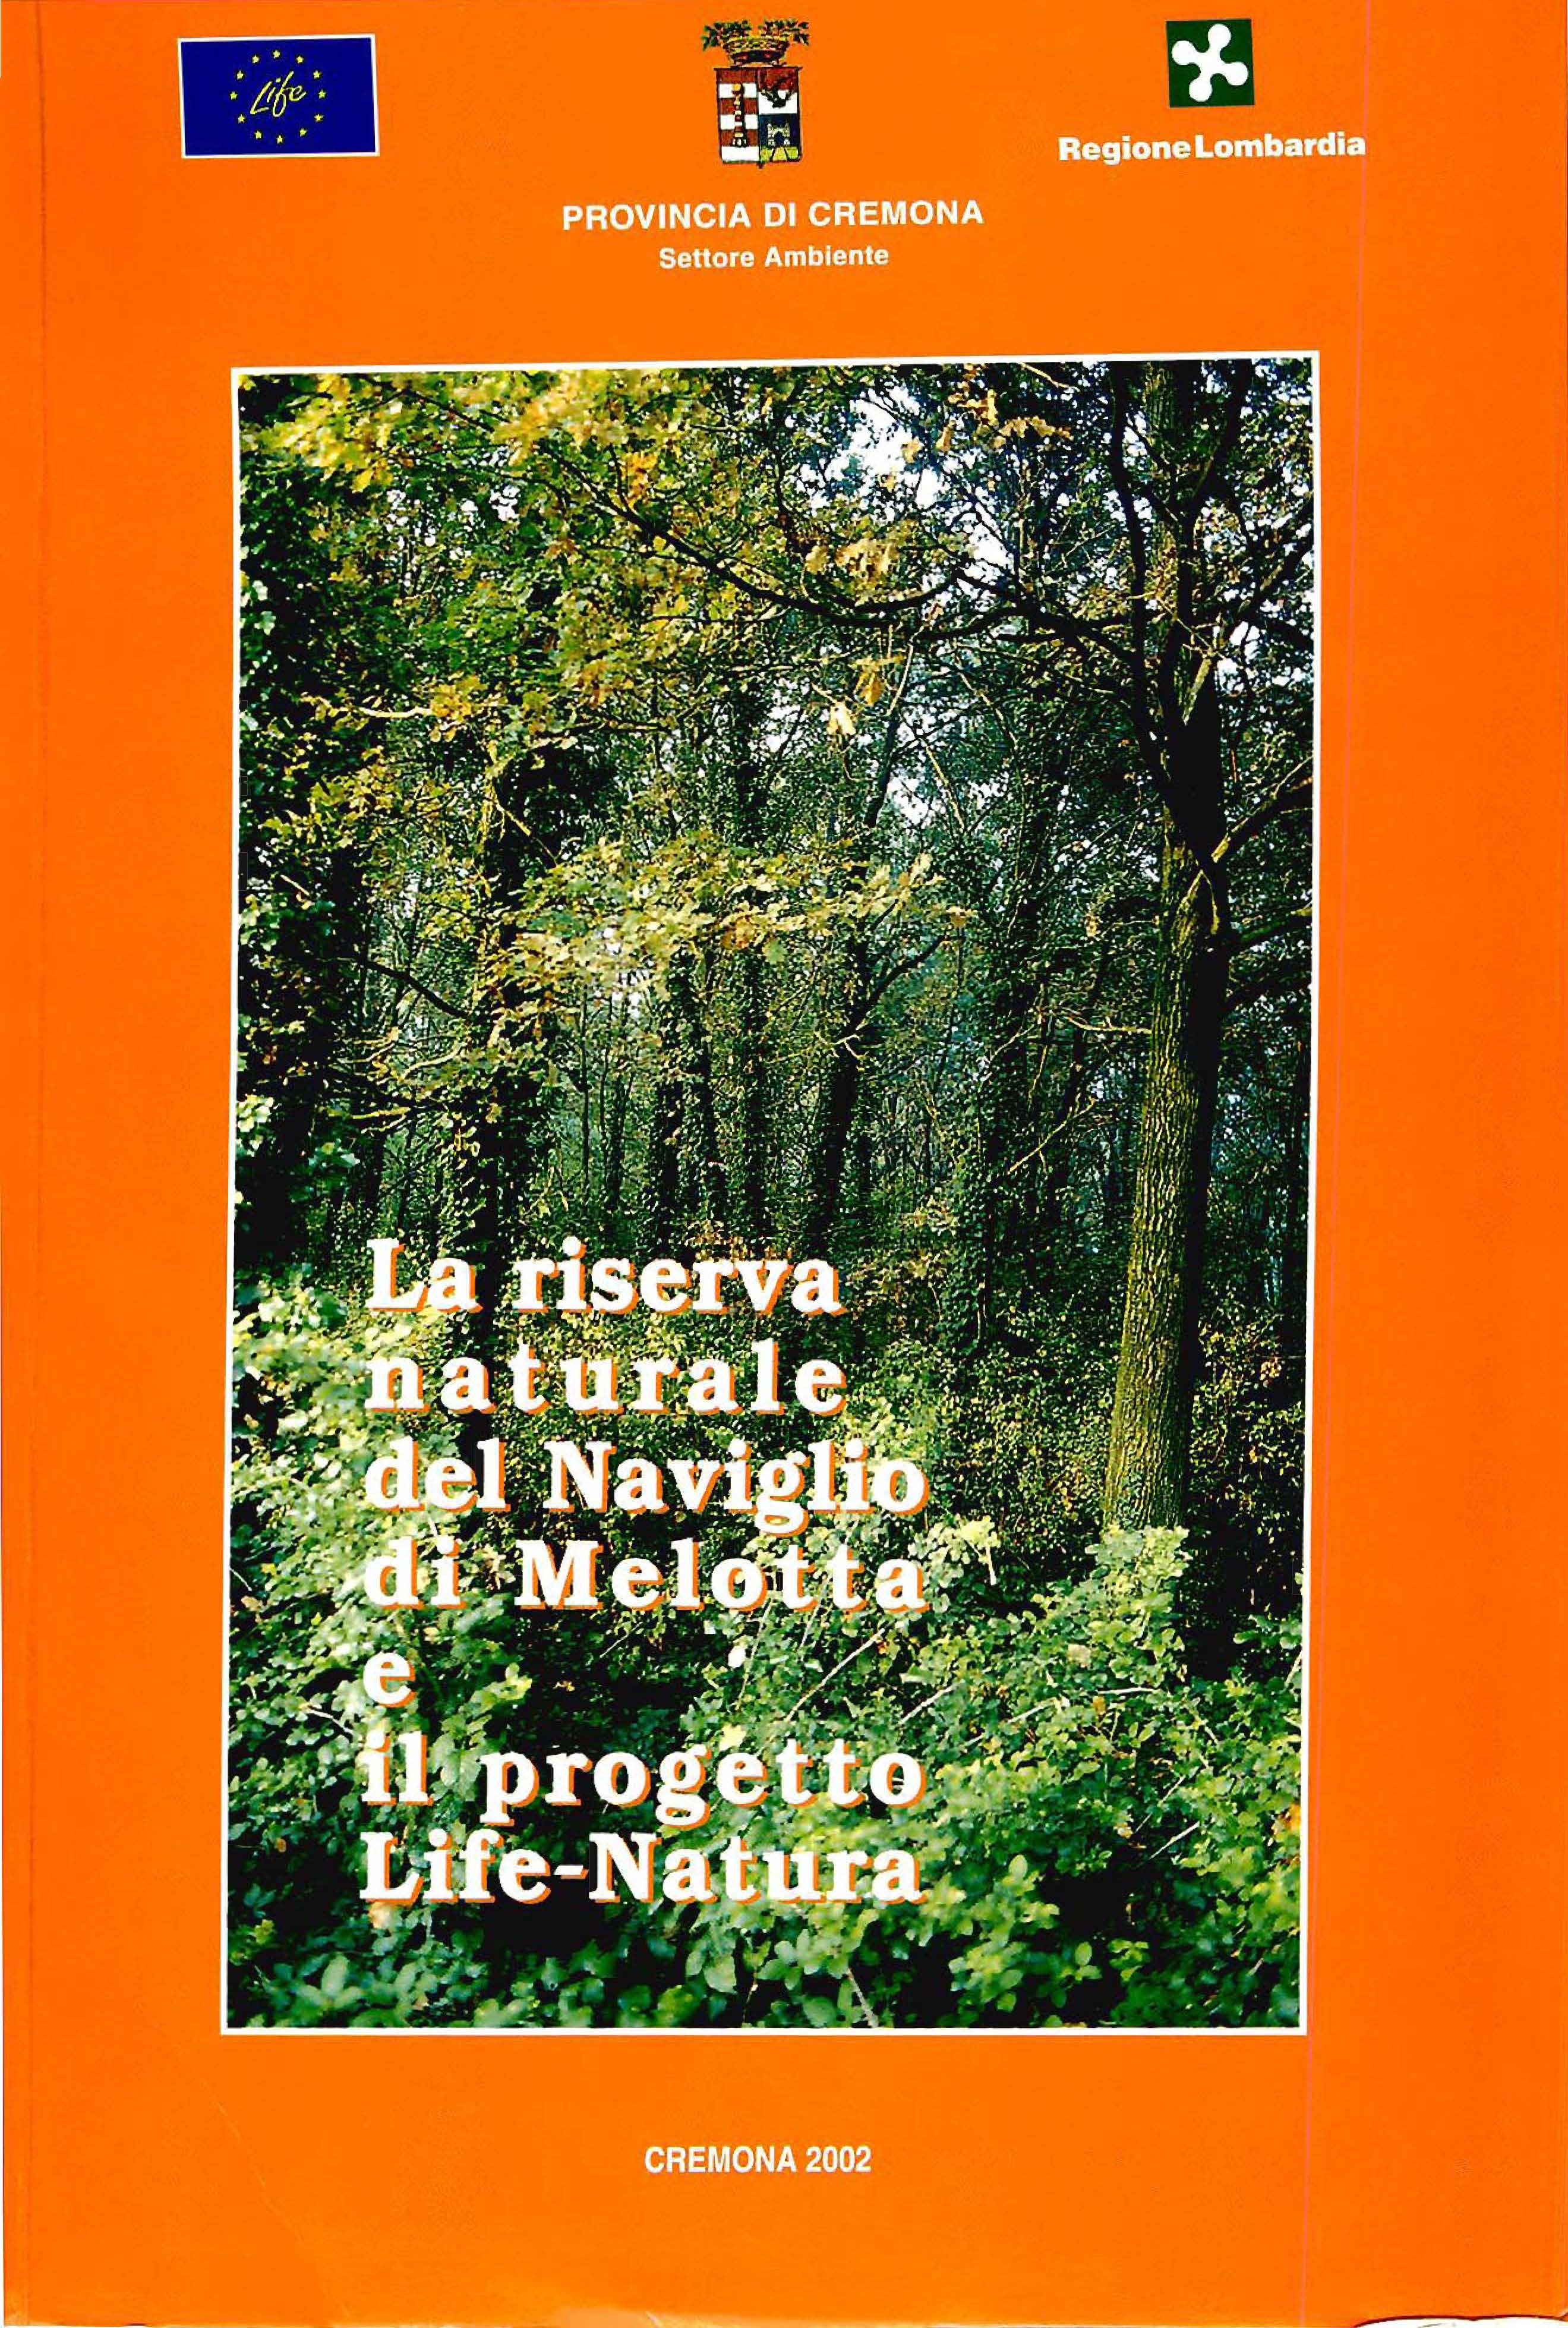 Copertina libro La riserva naturale del naviglio di Melotta e il progetto Life-Natura